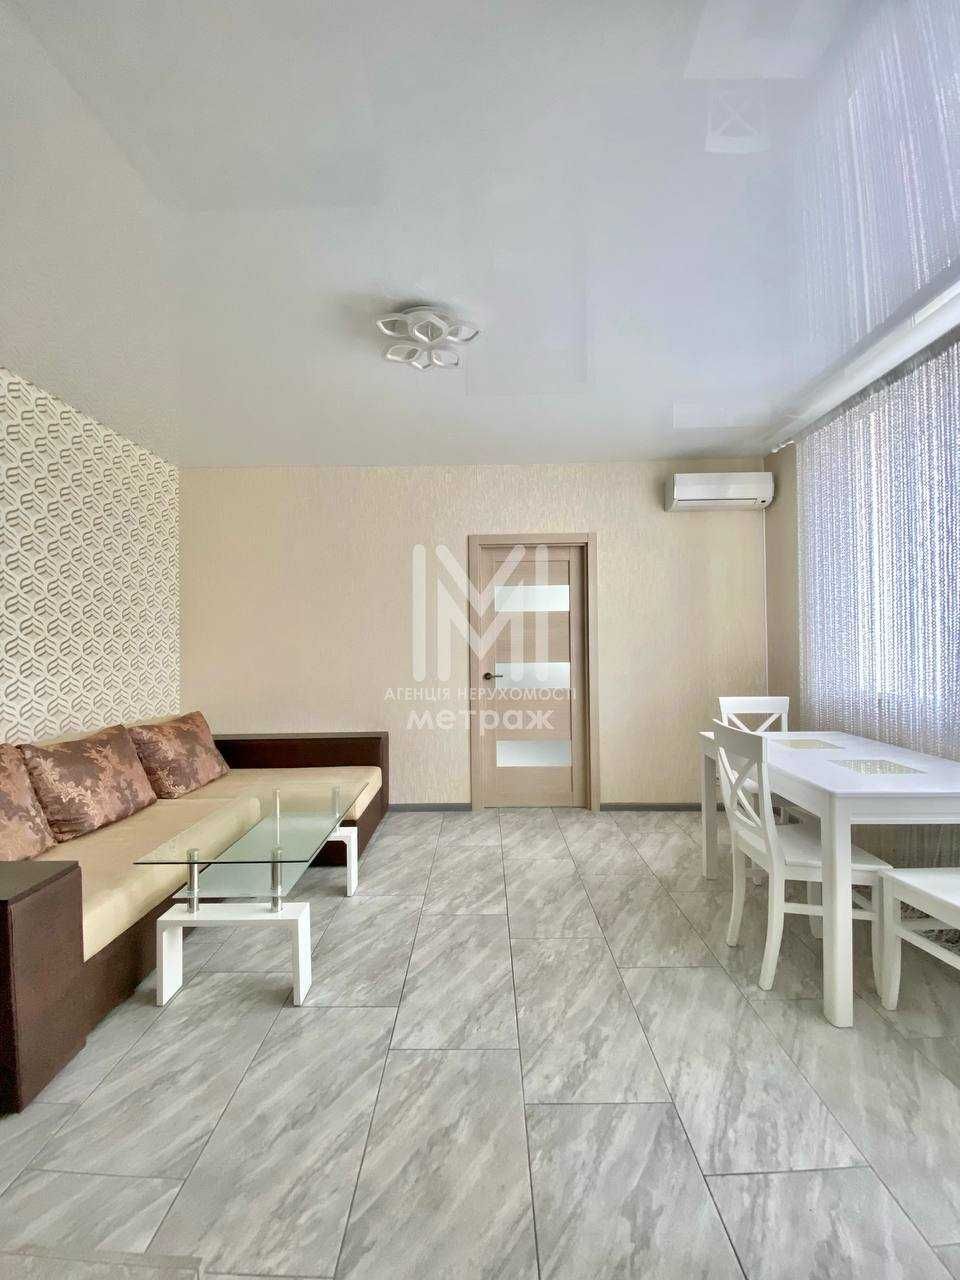 Продается уютная 2-комнатная квартира Алексеевка ( Код 16566)